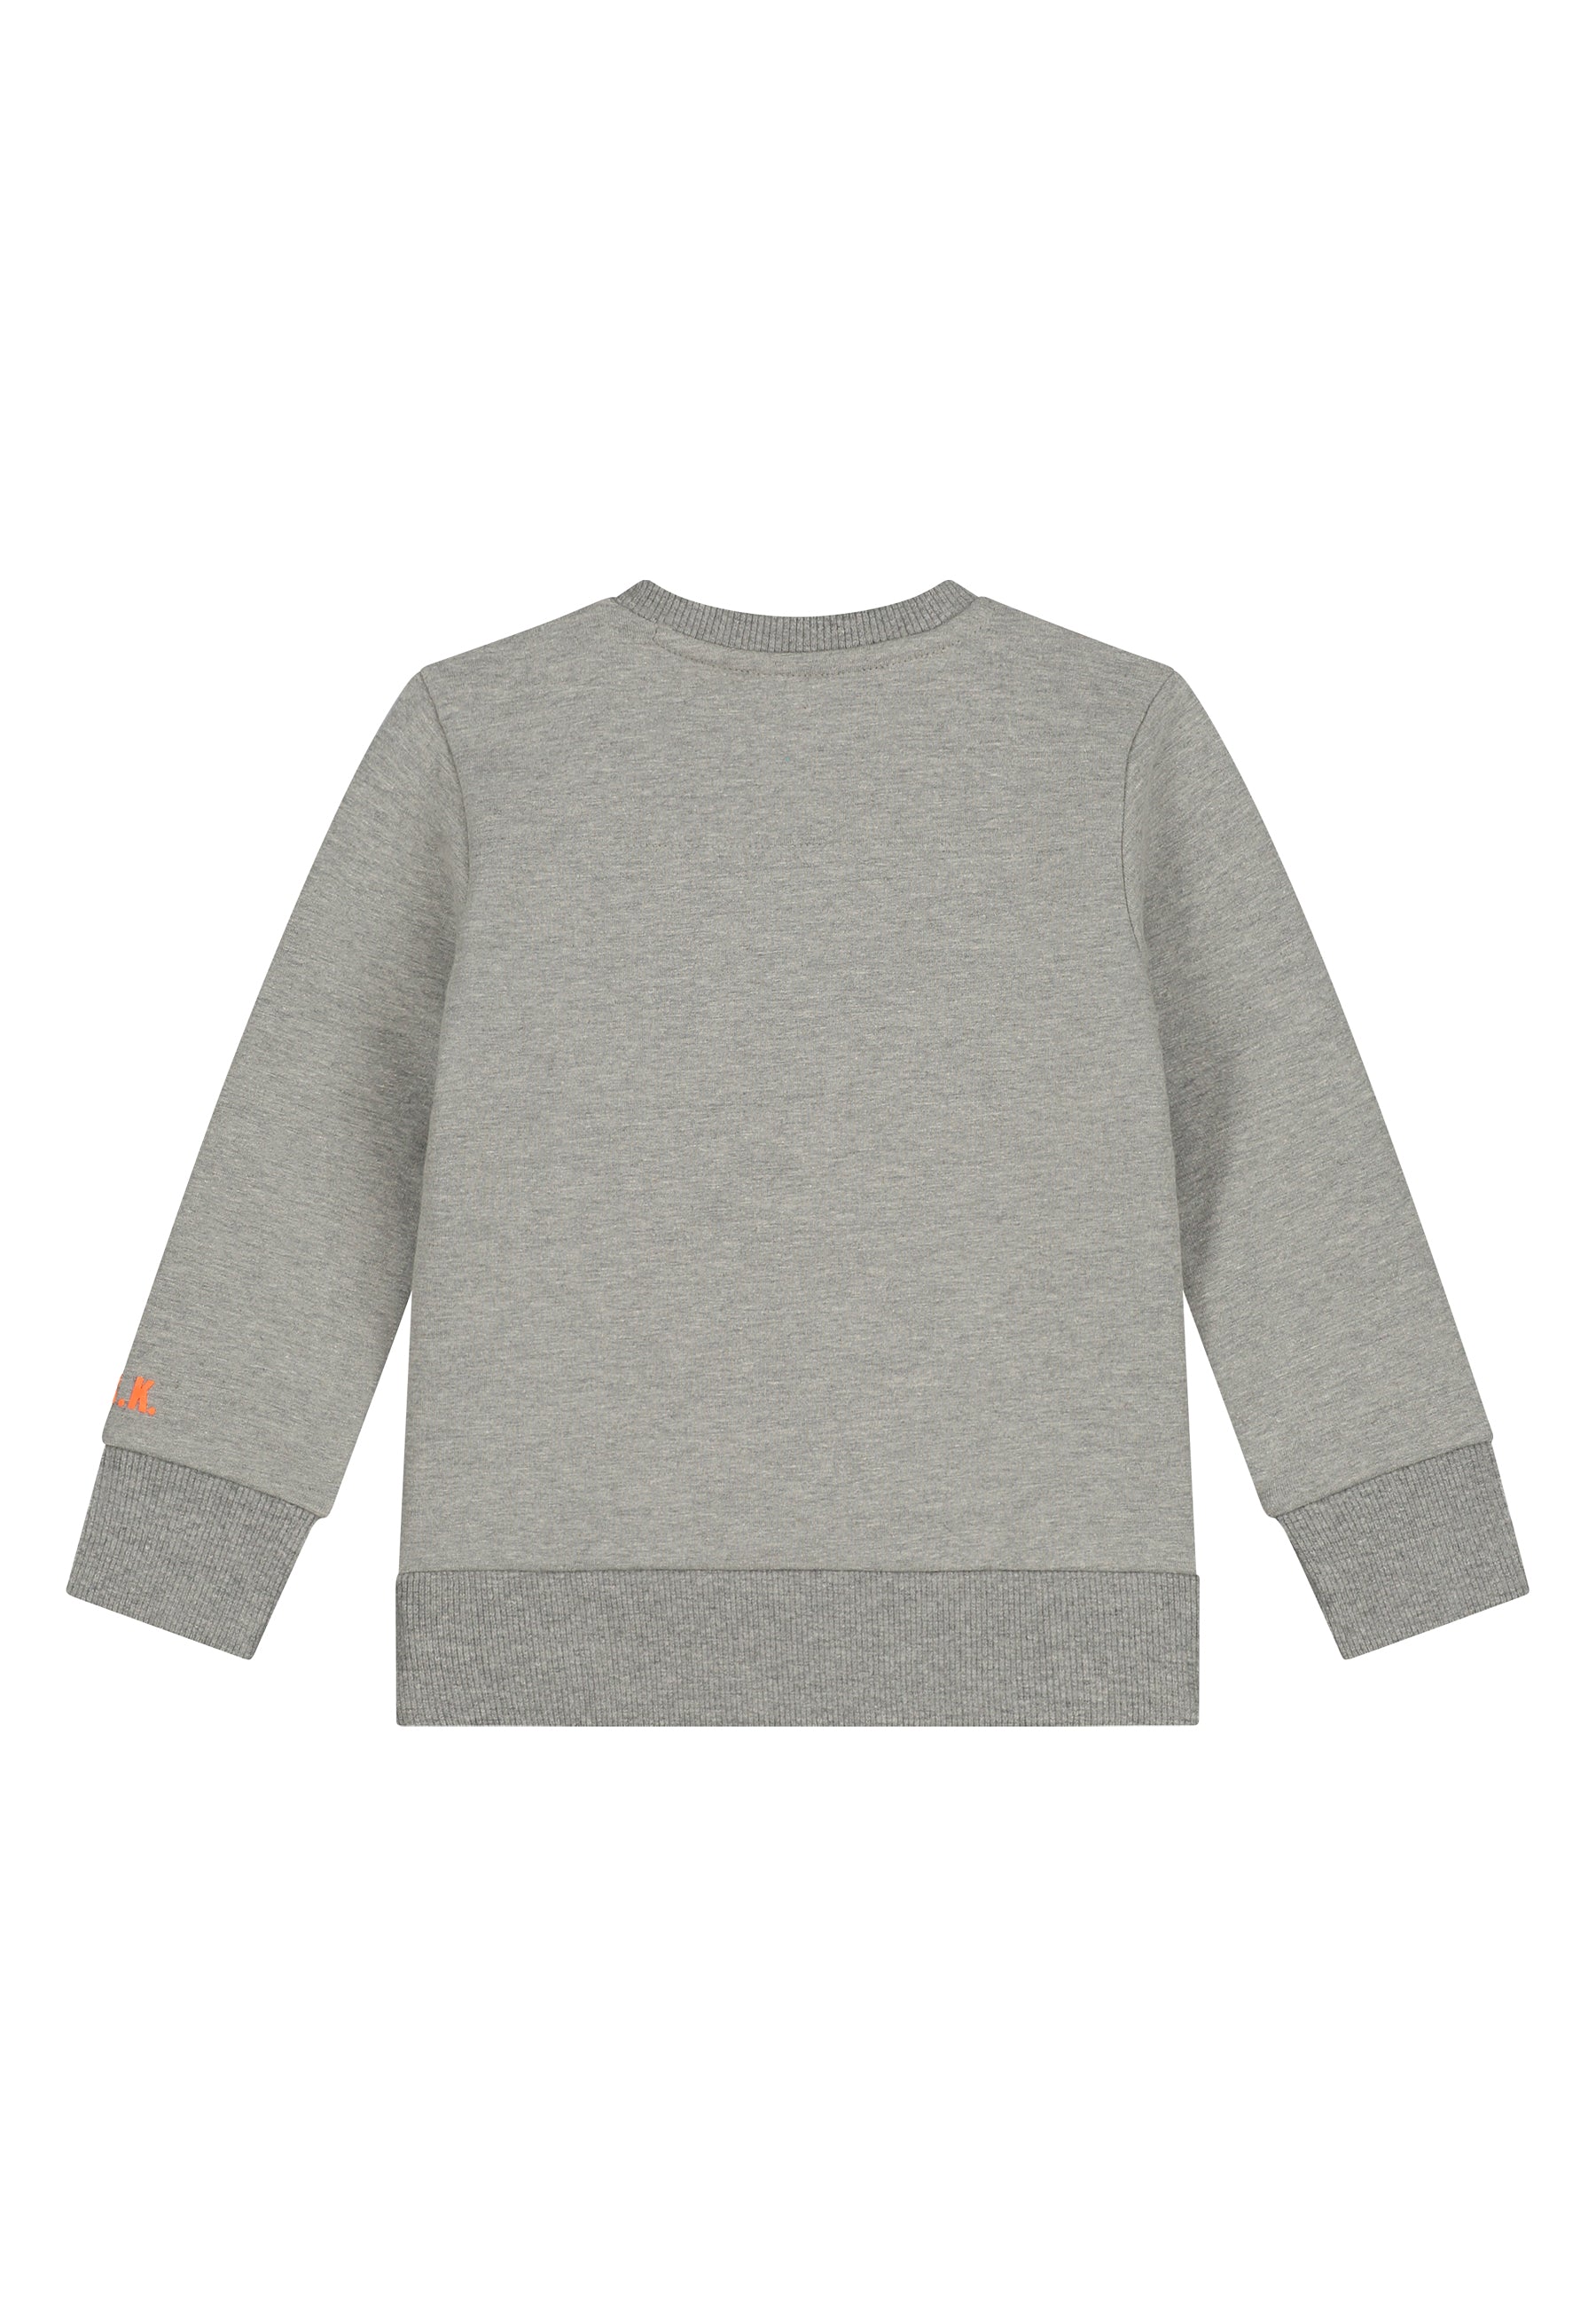 Skurk Little Rebel Sweater Mini Sam Gray melange